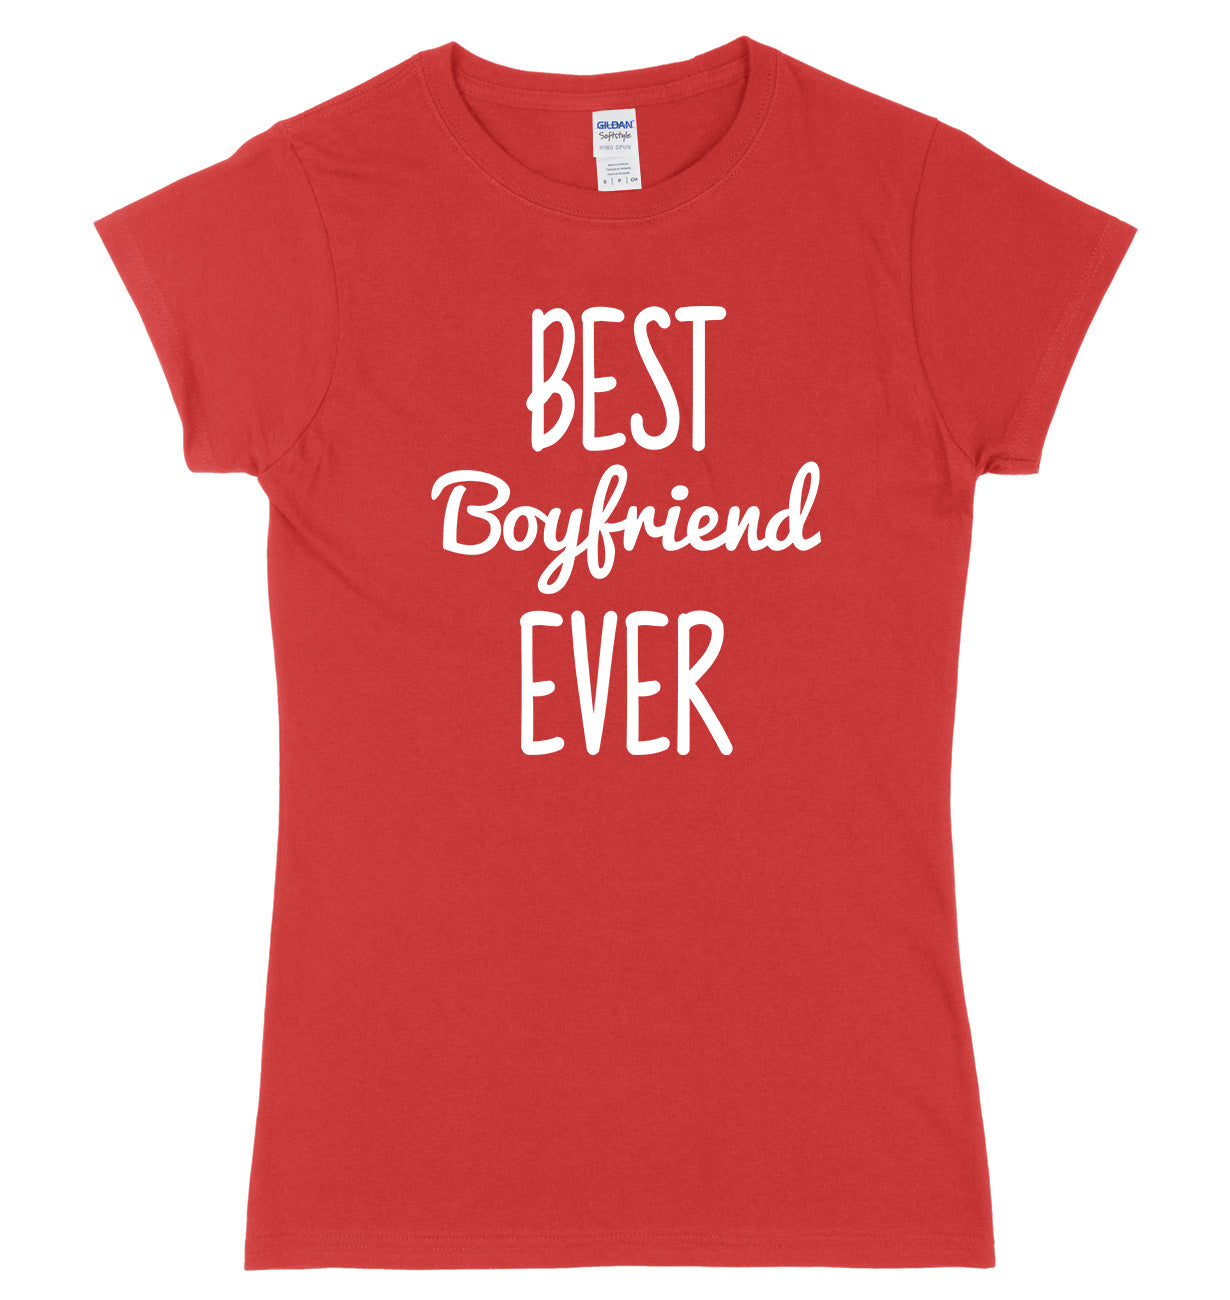 Best Boyfriend Ever Womens Ladies Slim Fit T-Shirt